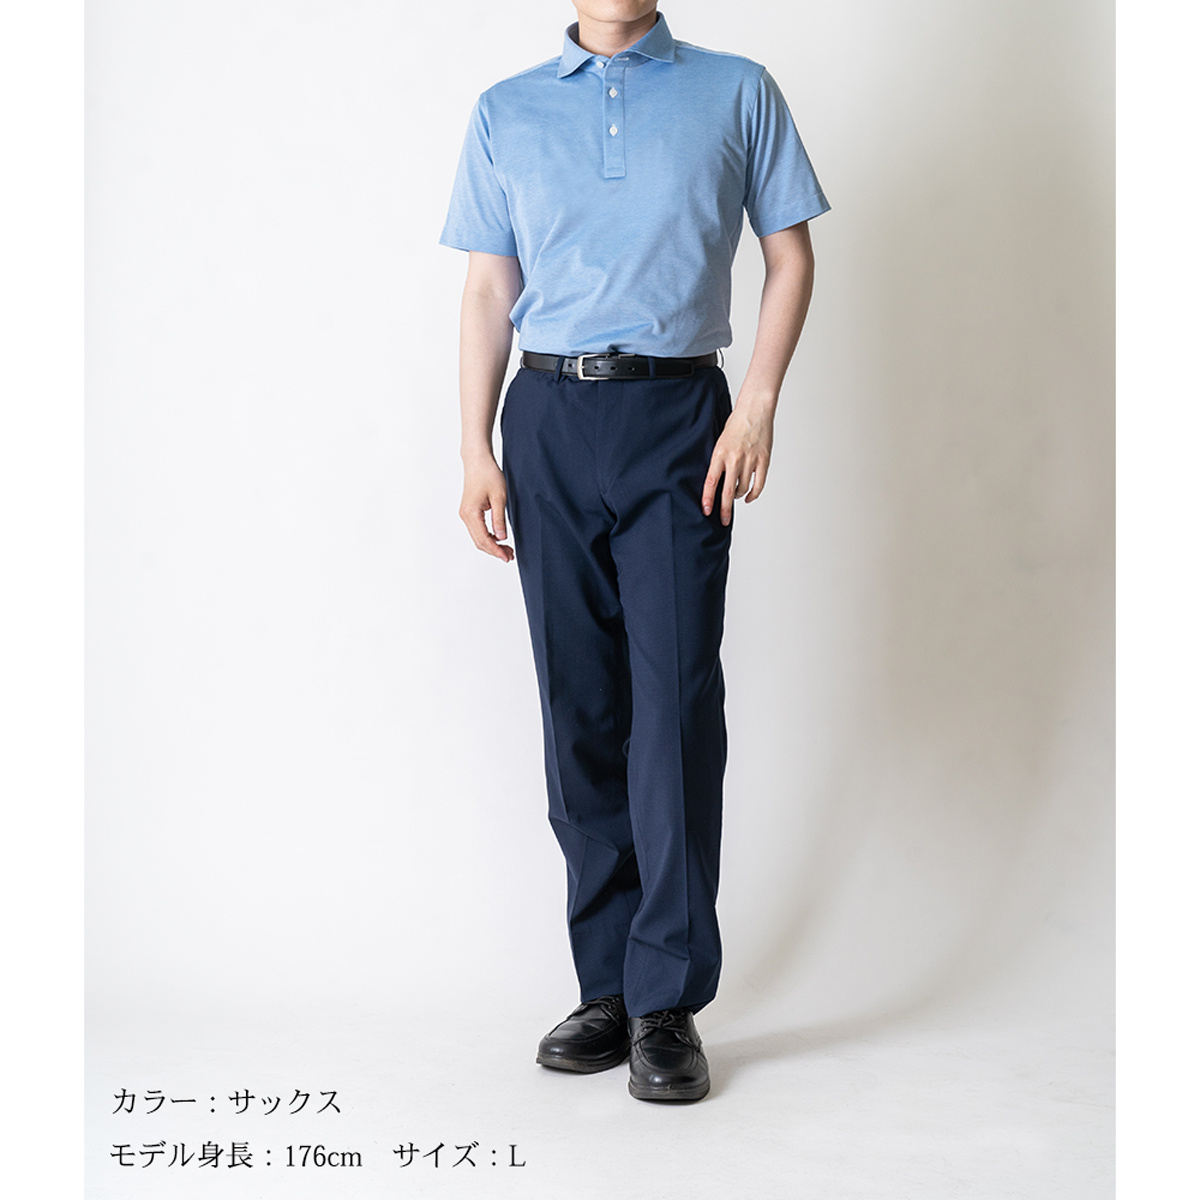 新品未使用♡UVカット・クイックドライ♡ポロシャツ♡サイズ1